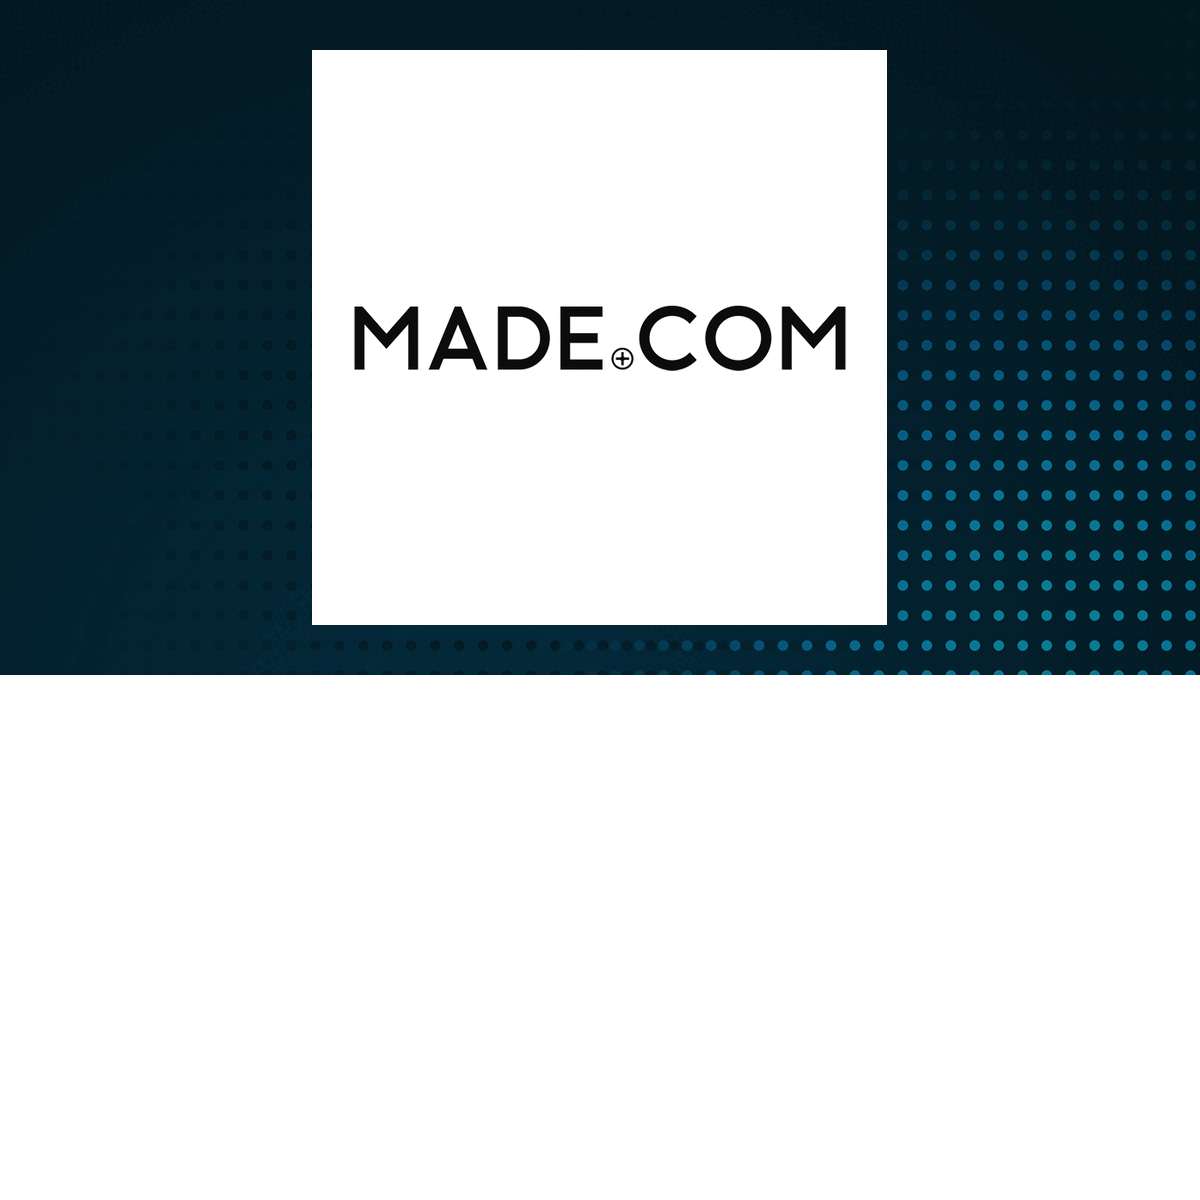 Made.com Group logo